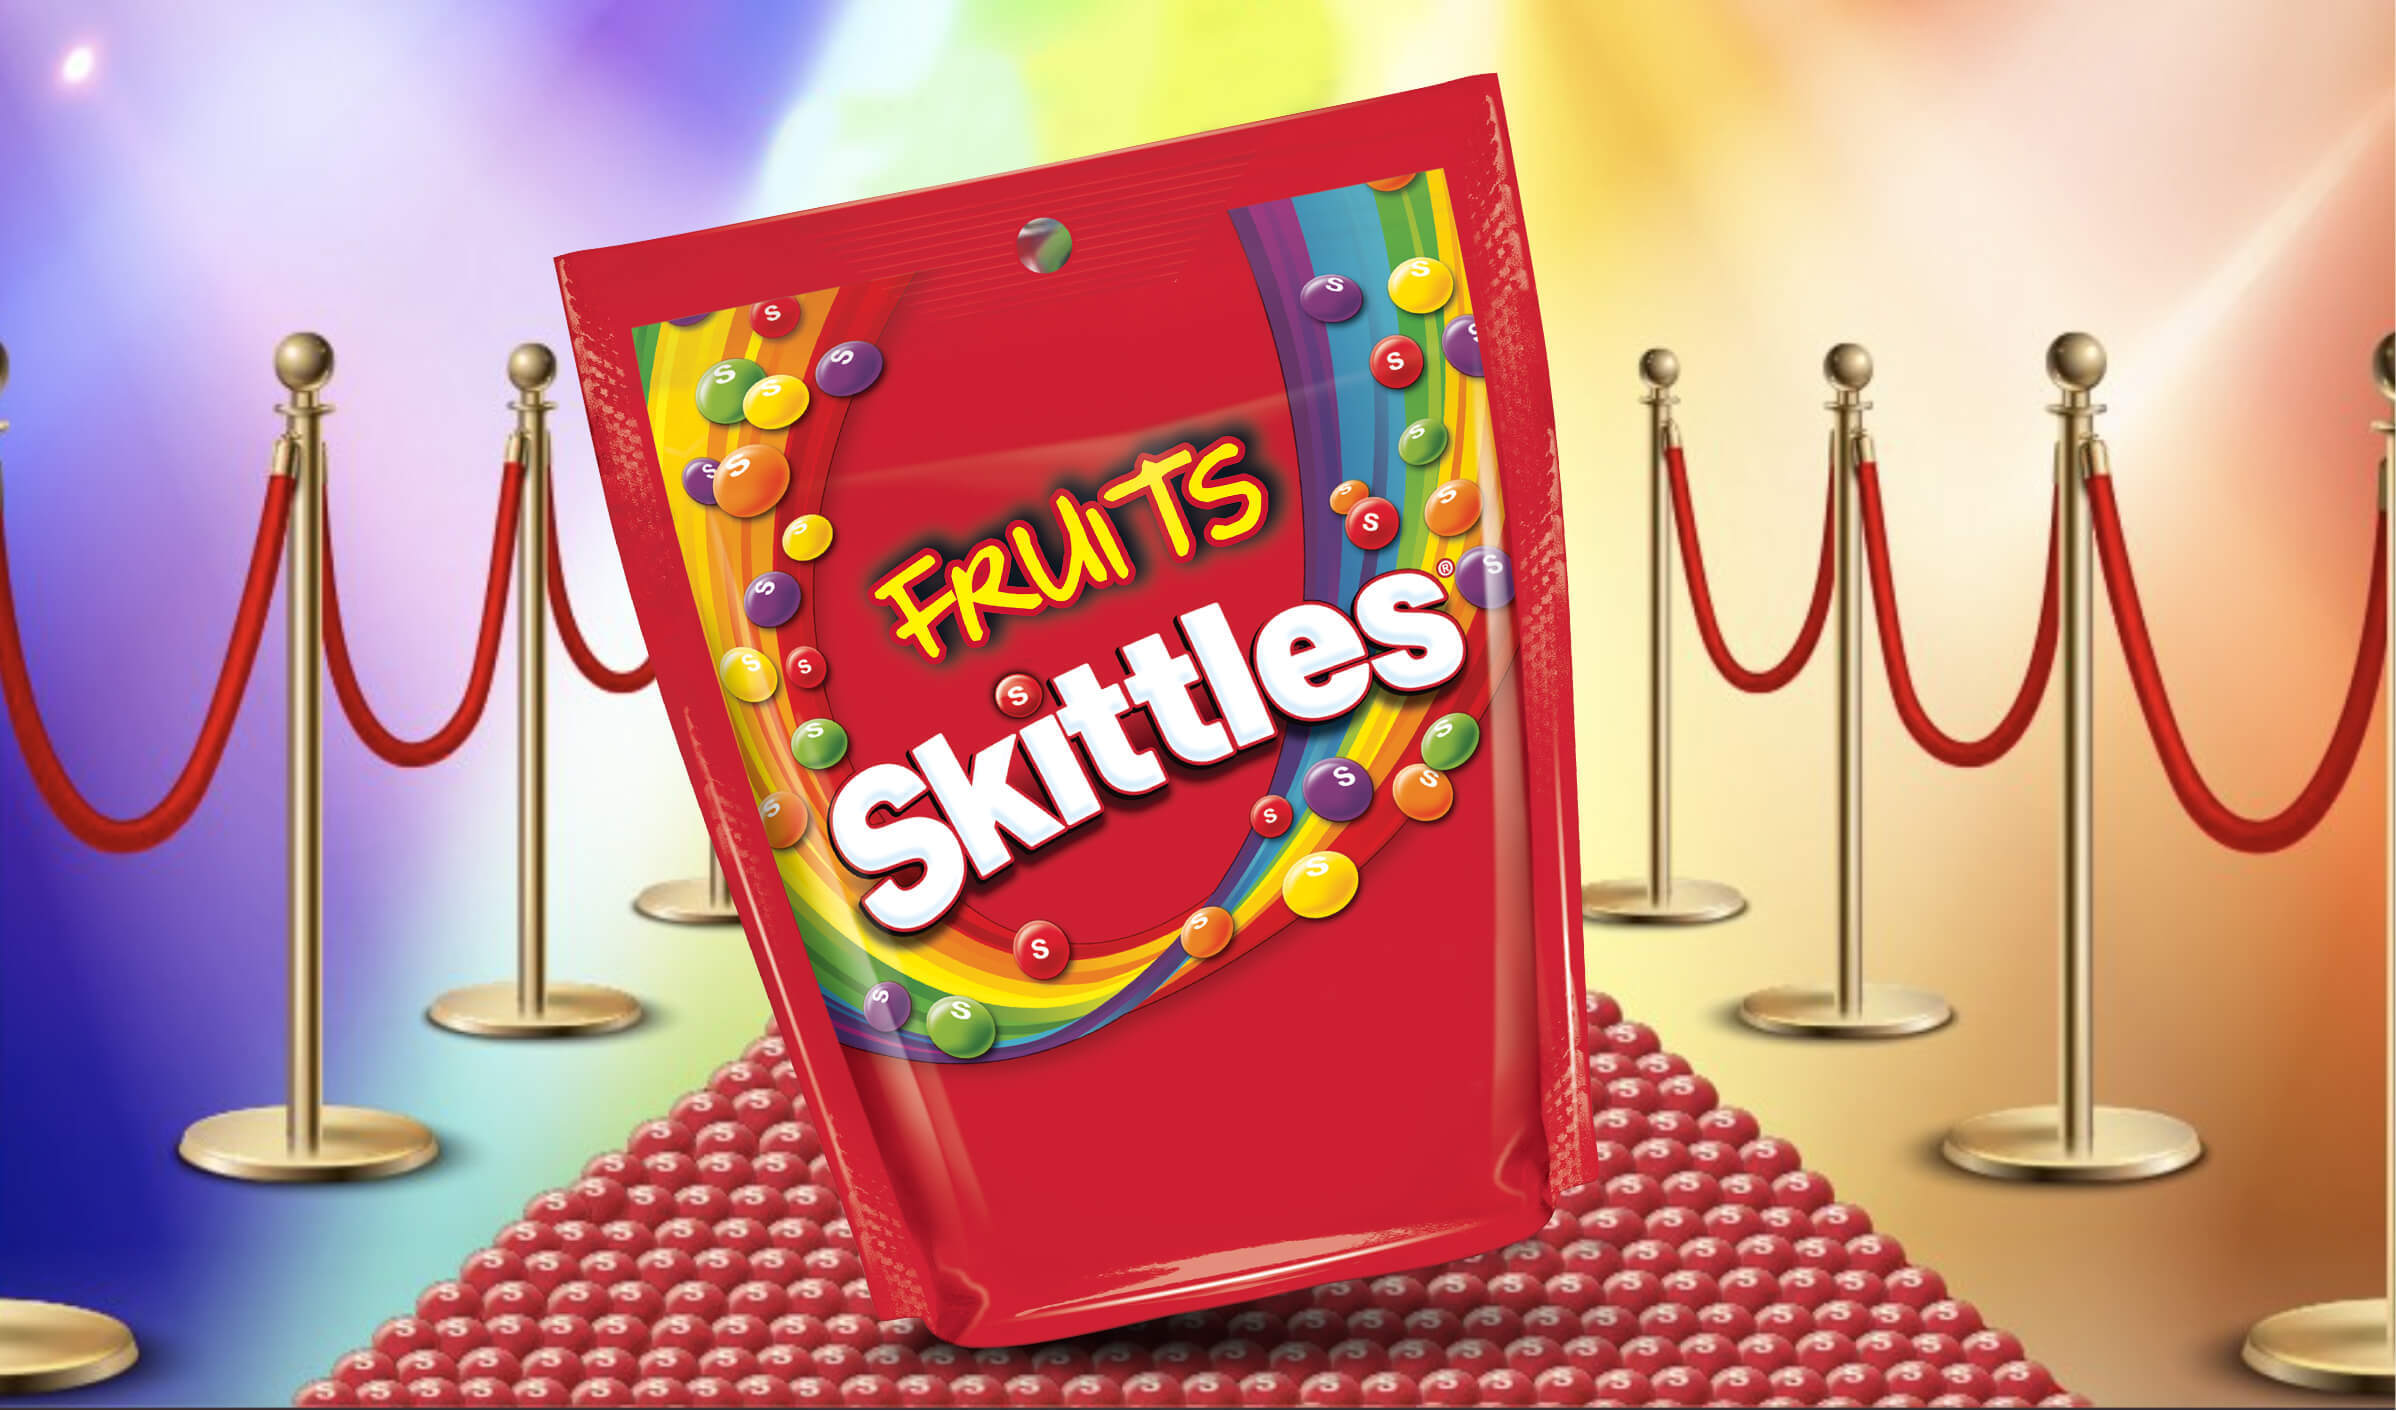 Skittles Fruits on red carpet